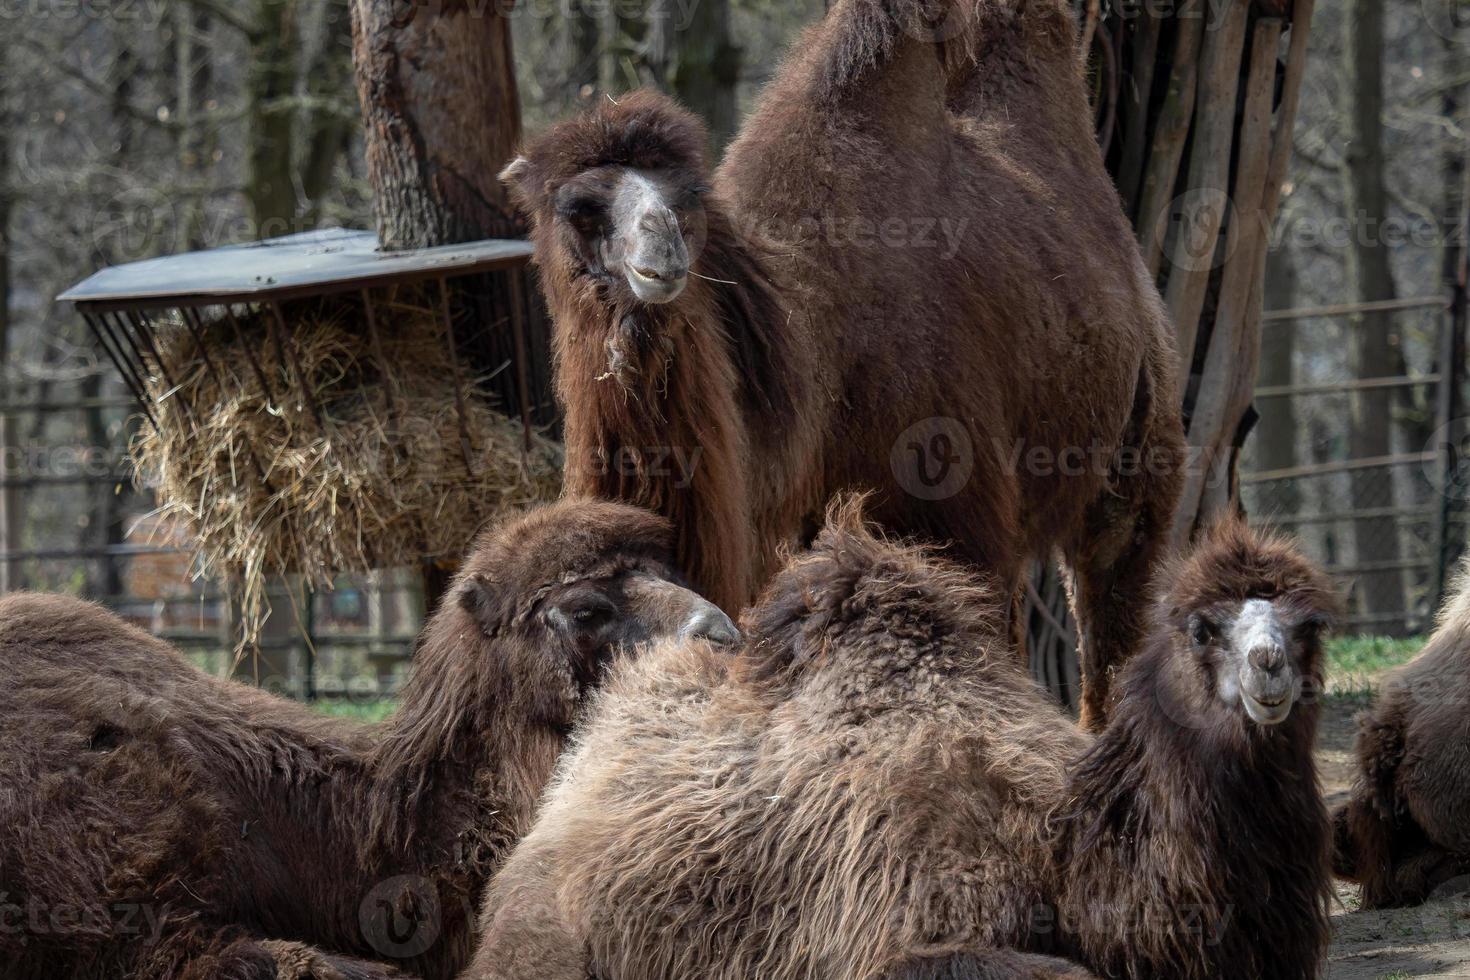 camelo bactriano camelus bactrianus descansando no chão. corcunda camelo bactriano foto